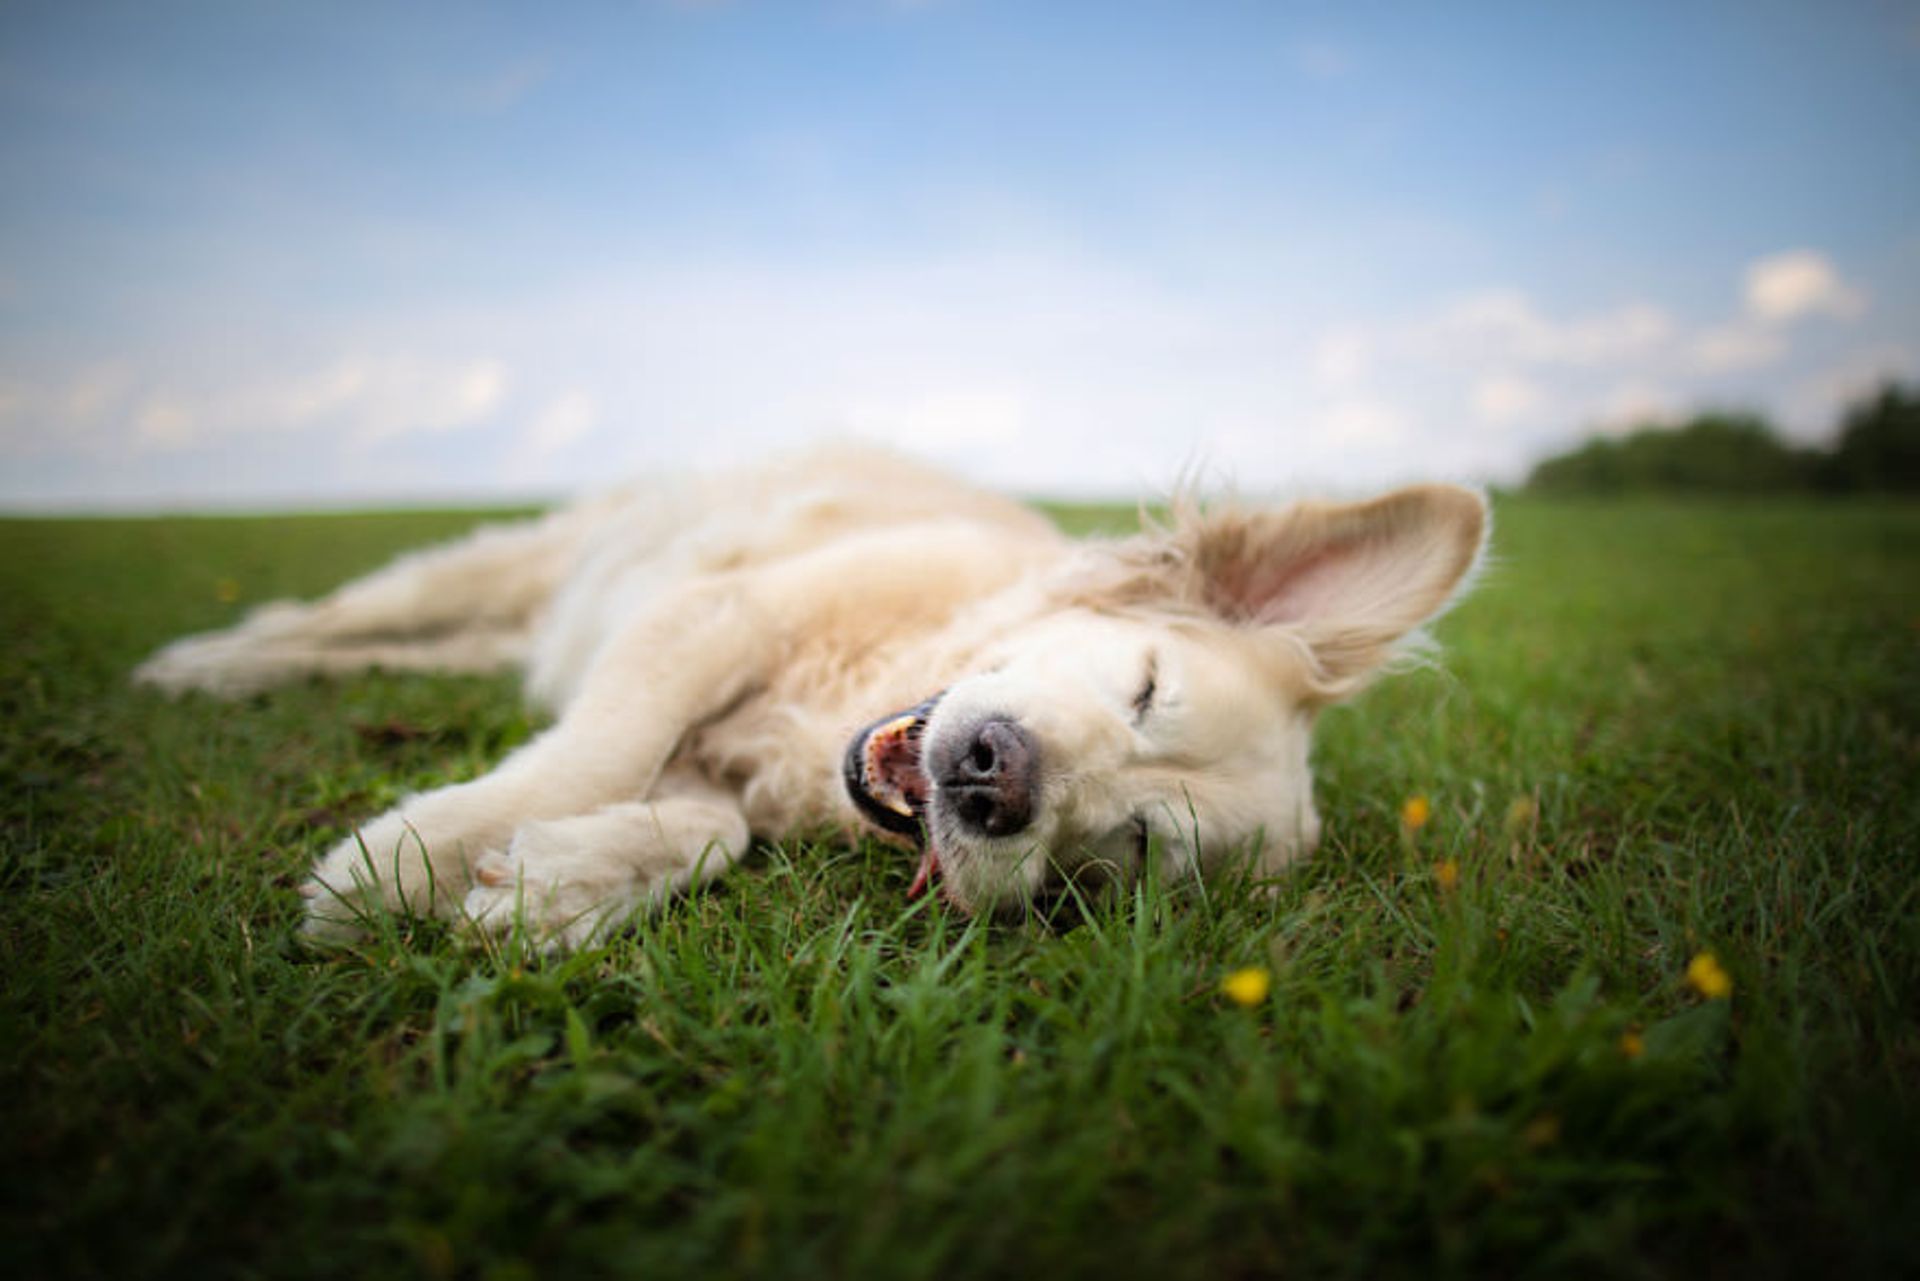 مرجع متخصصين ايران گالري تصاويري از لبخند سگ ها